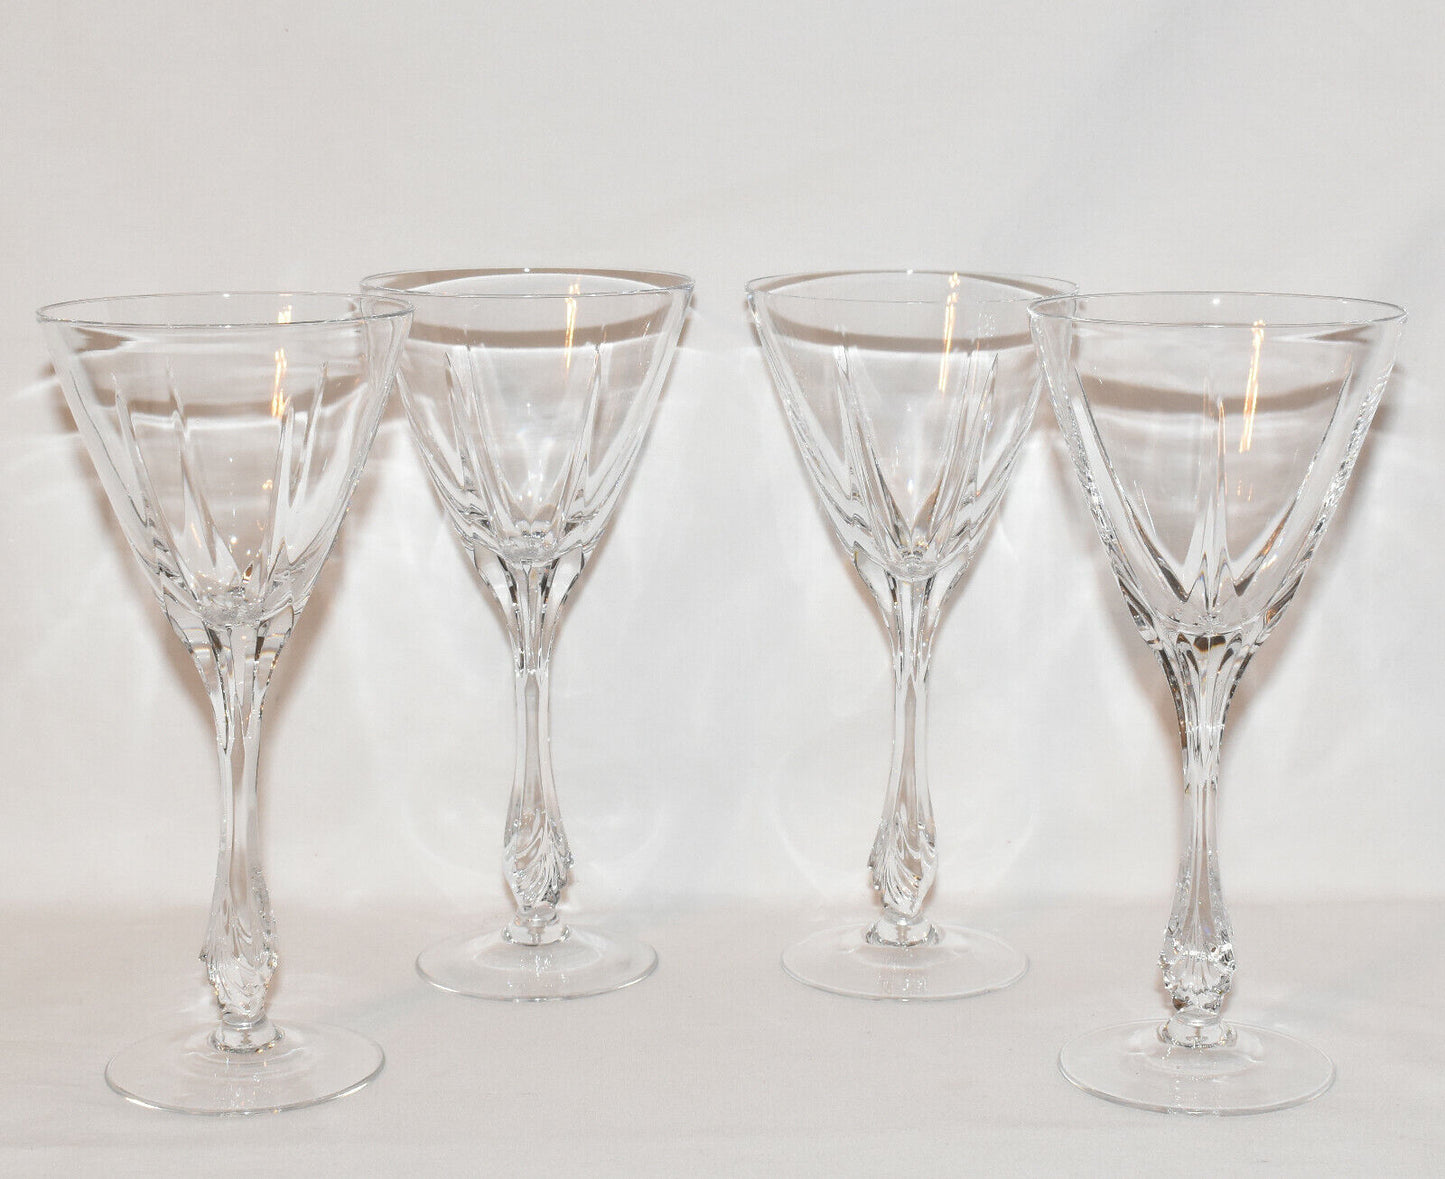 Vintage Gorham Crystal Goblets 4PC Set Drinking Glasses Wine Goblets Germany